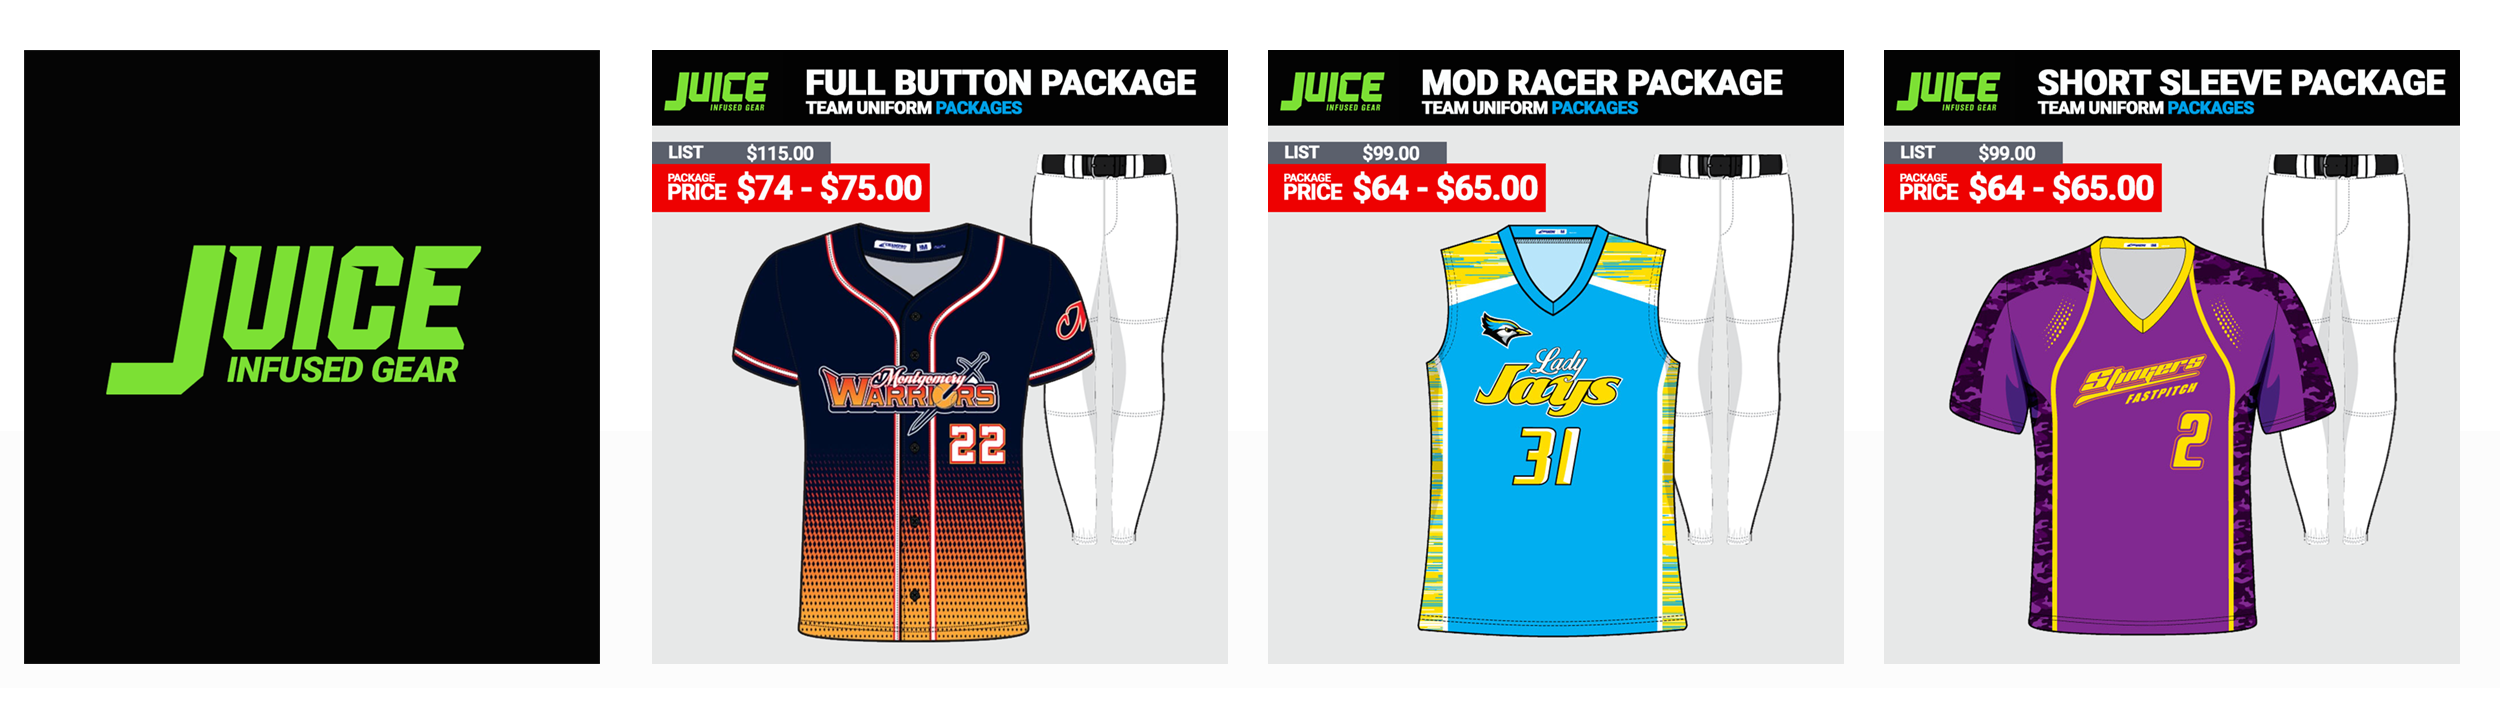 Champro Juice Softball Uniforms